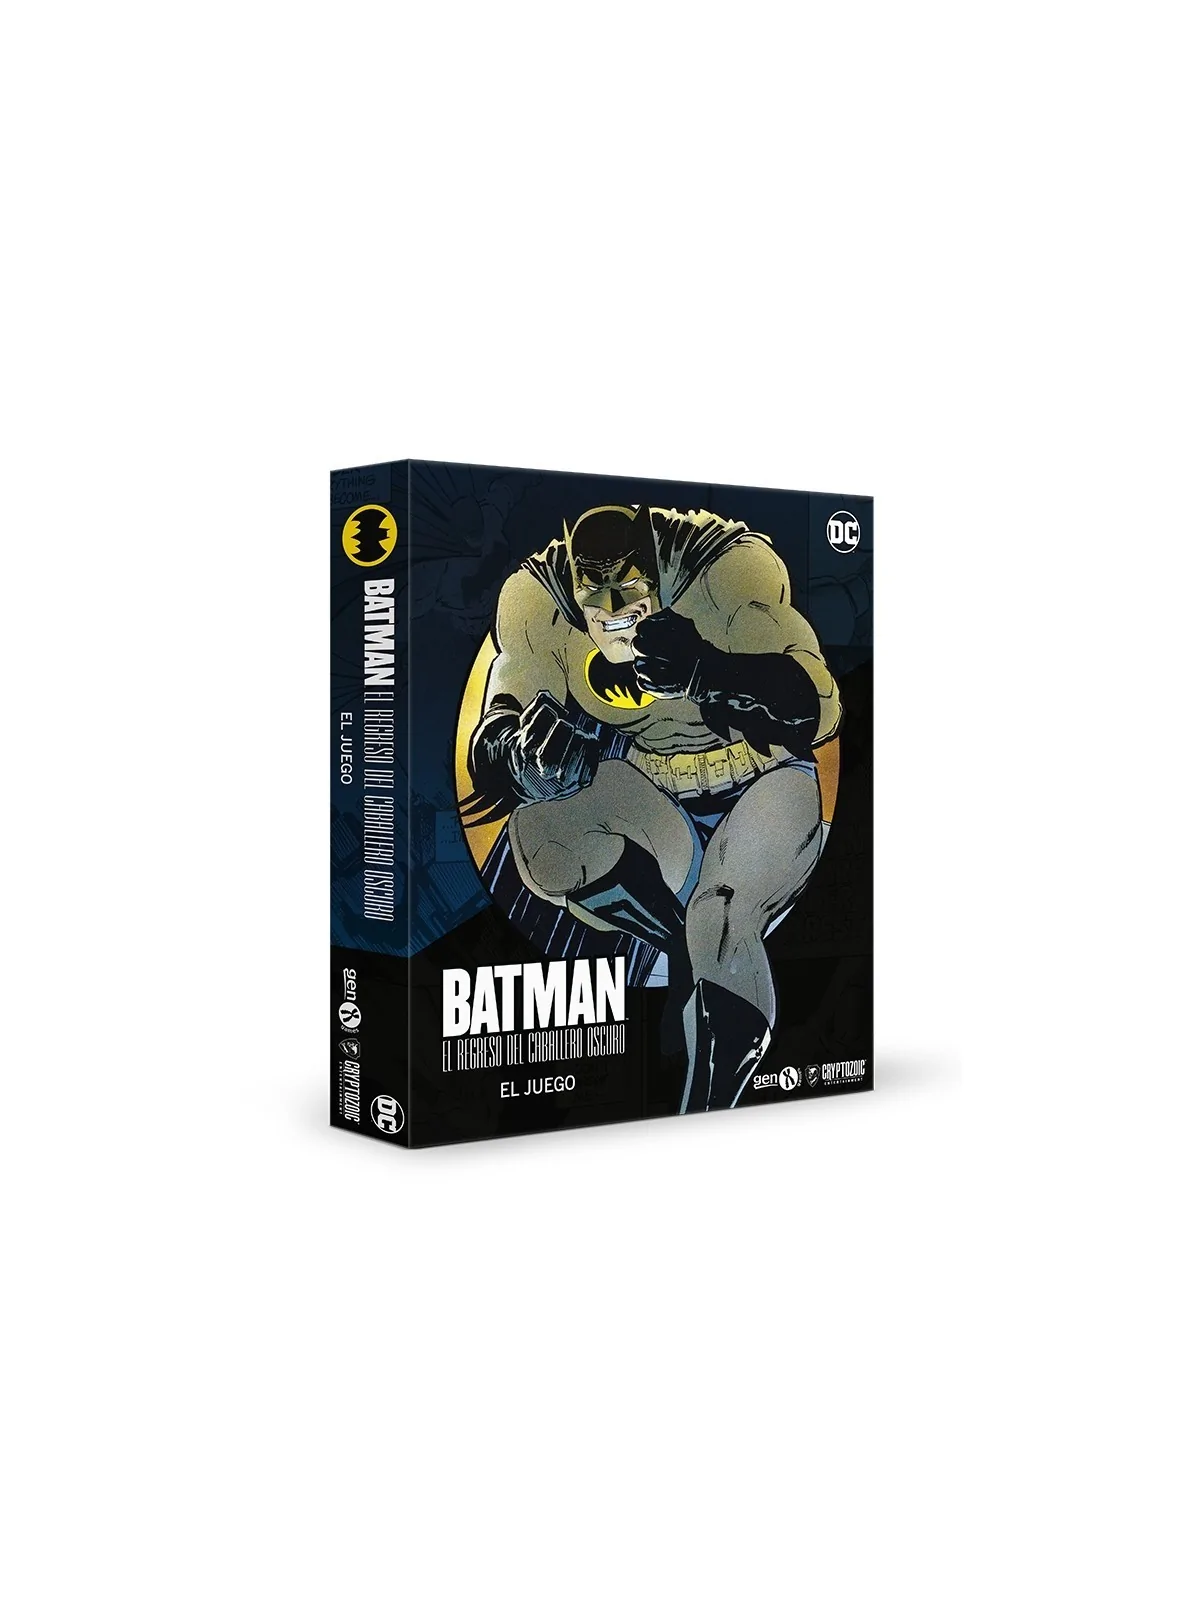 Comprar Batman: El Regreso del Caballero Oscuro barato al mejor precio